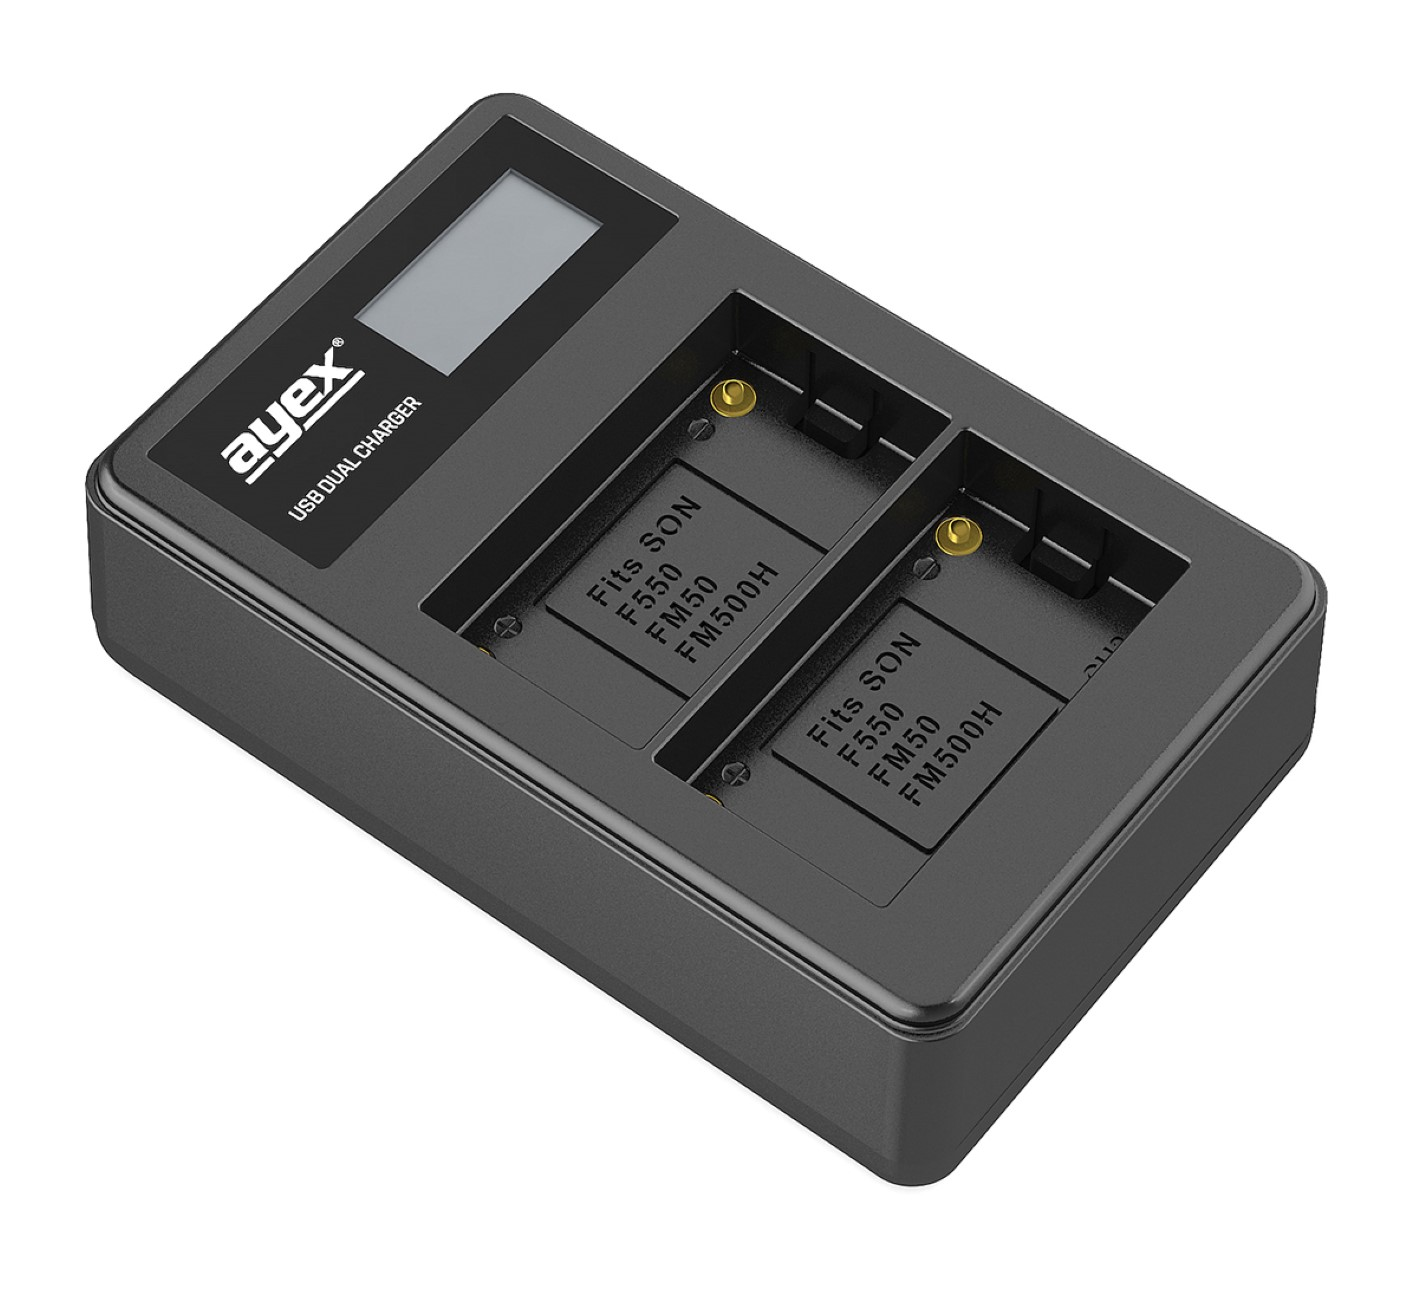 AYEX USB Lader, Kamera-Akku Dual für Black Sony NP-FM50 NP-F550 NP-FM550H Akkus, Ladegerät